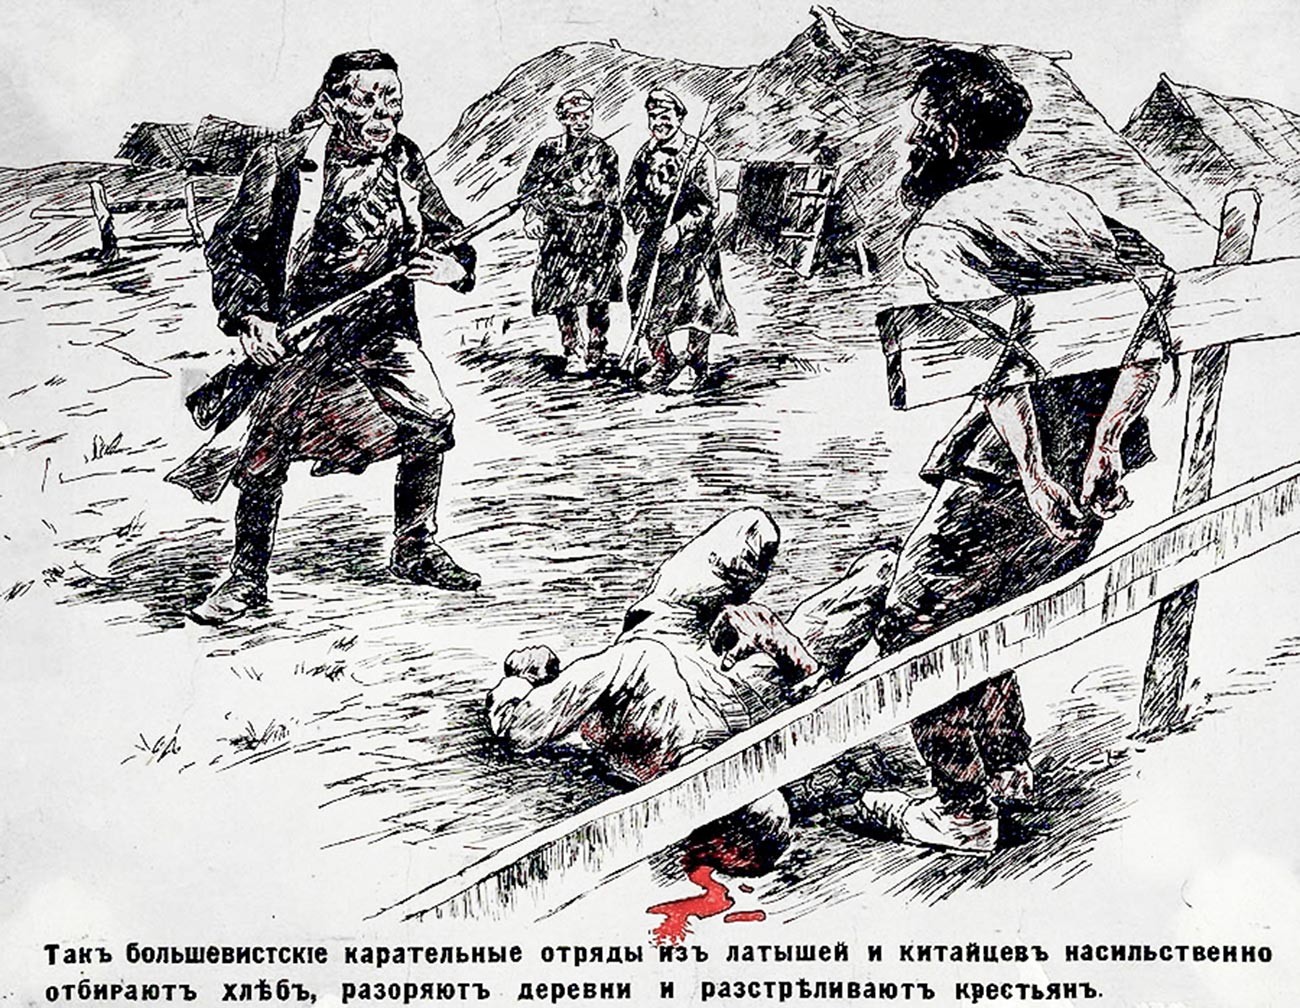 Des détachements punitifs de Lettons et de Chinois s'approprient le pain, ravagent des villages et tuent des paysans